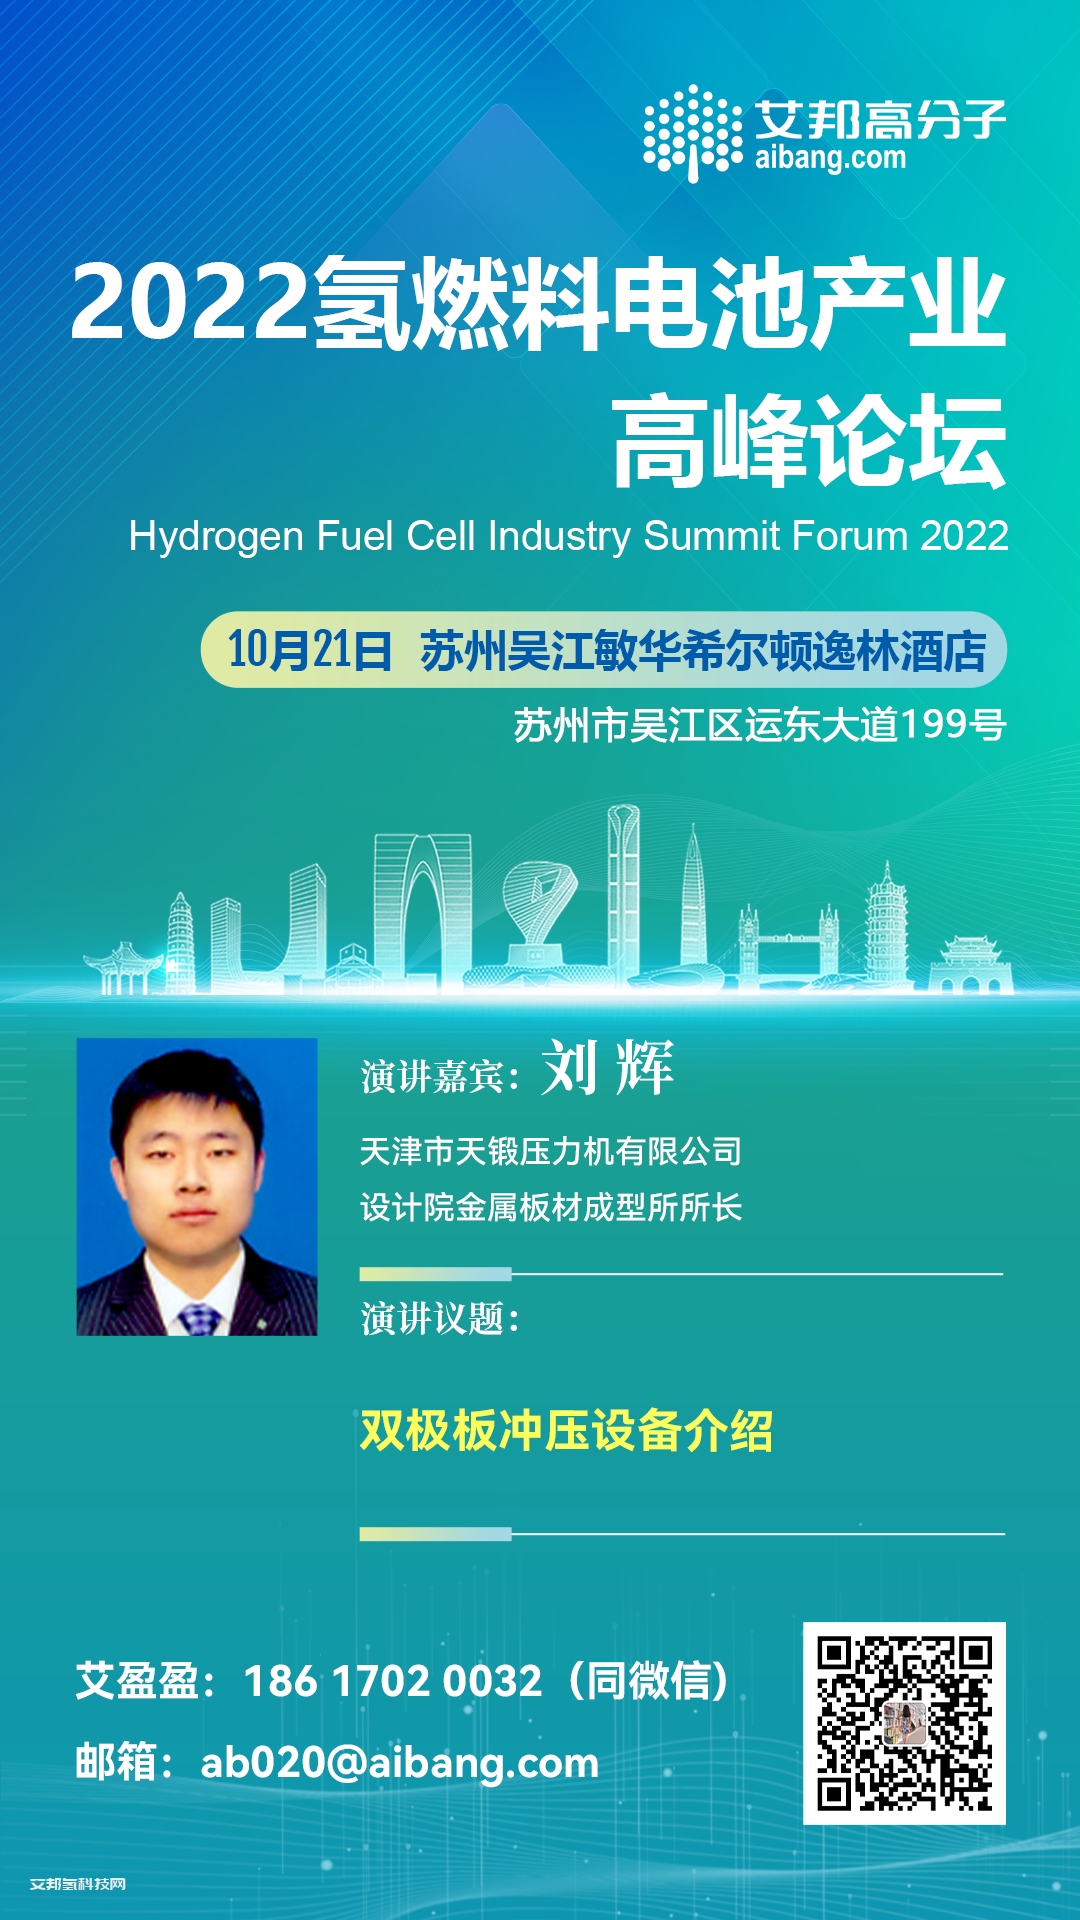 天锻压力机将出席氢燃料电池产业链高峰论坛并做主题演讲